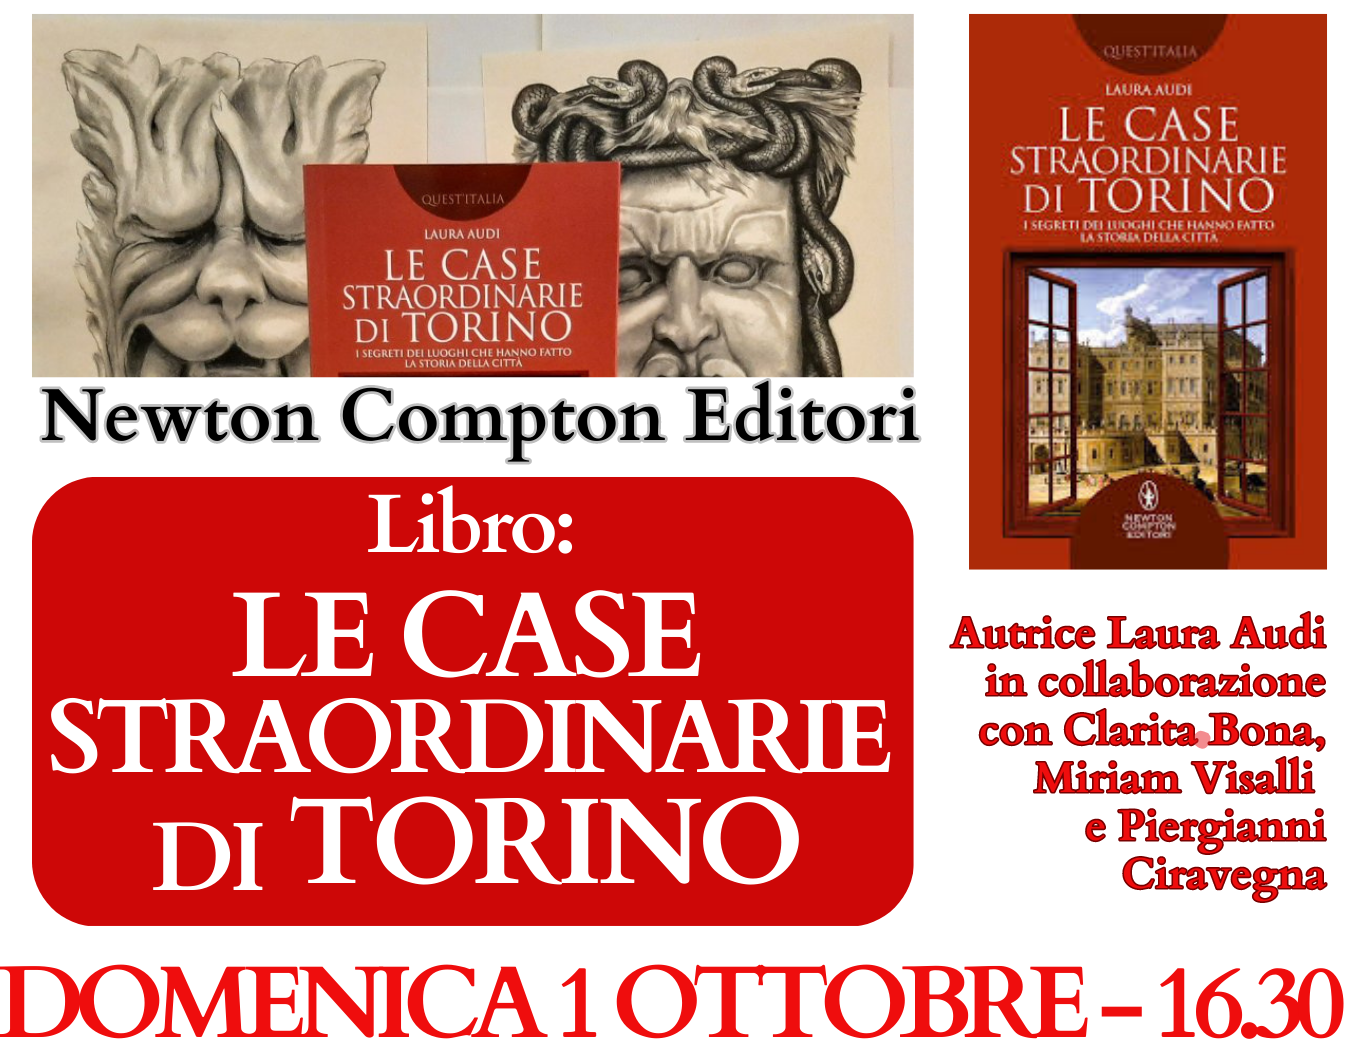 Le Case Straordinarie di Torino - ingresso gratuito (necessaria prenotazione on-line)